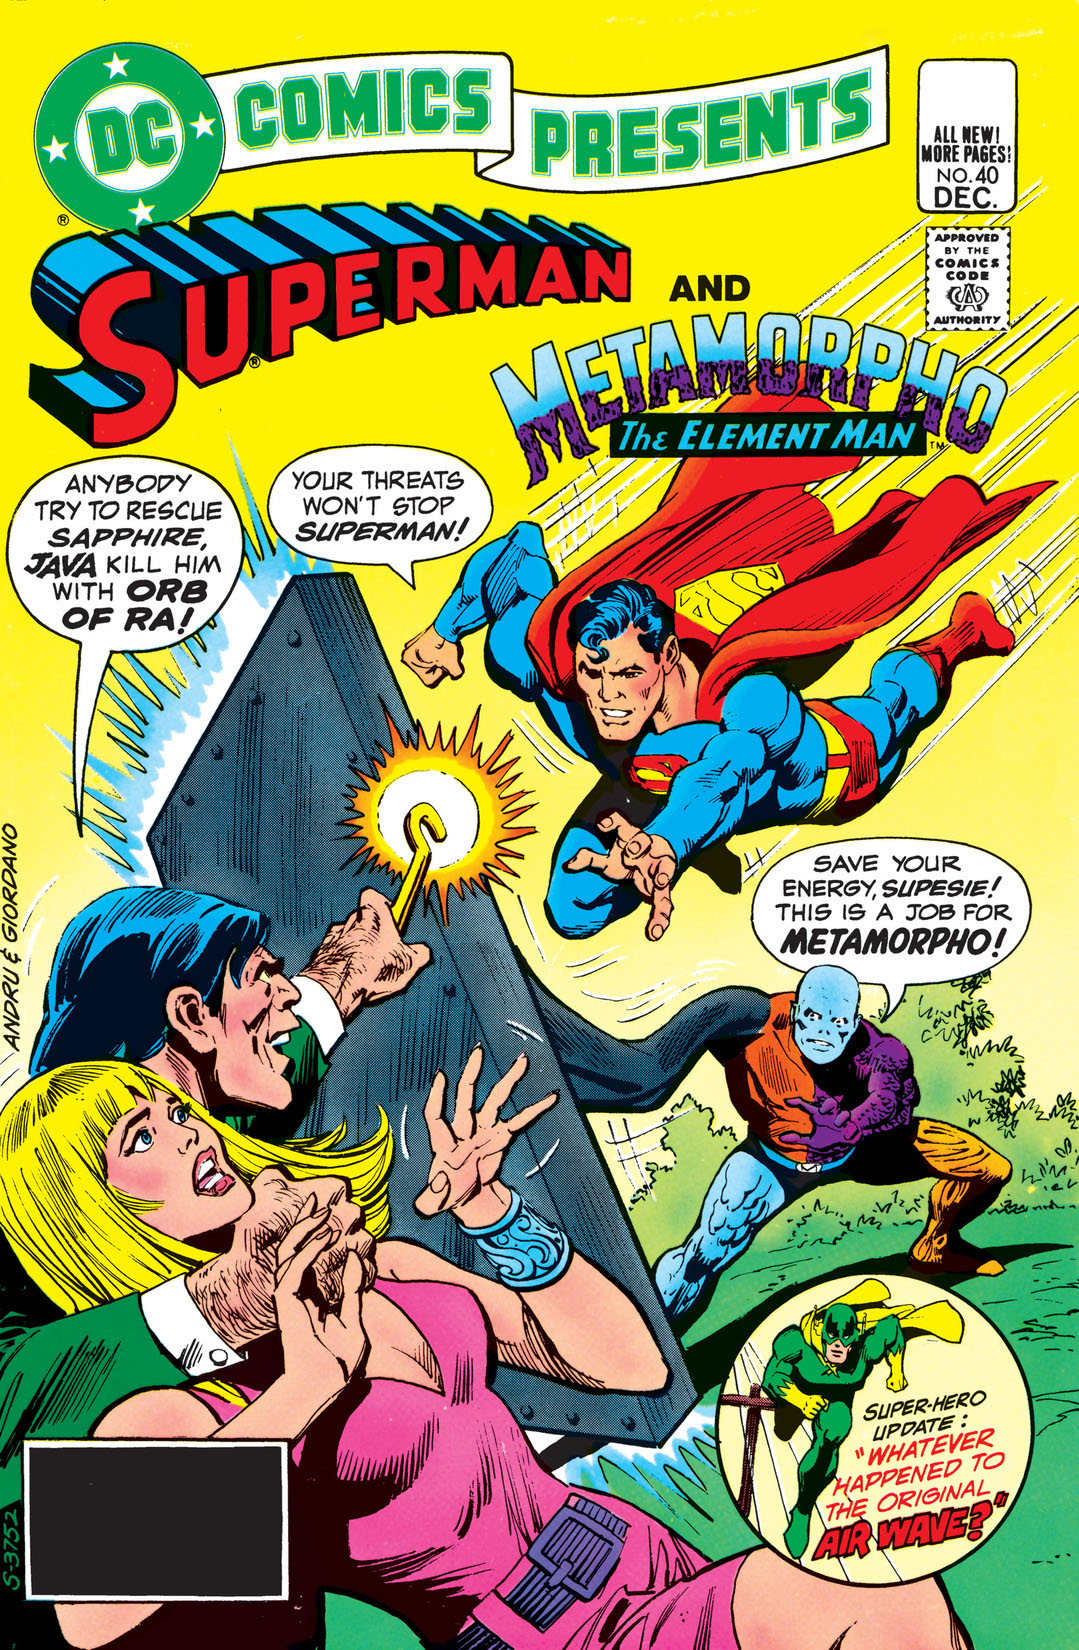 DC Comics Presents (1978-1986) #40 preview images